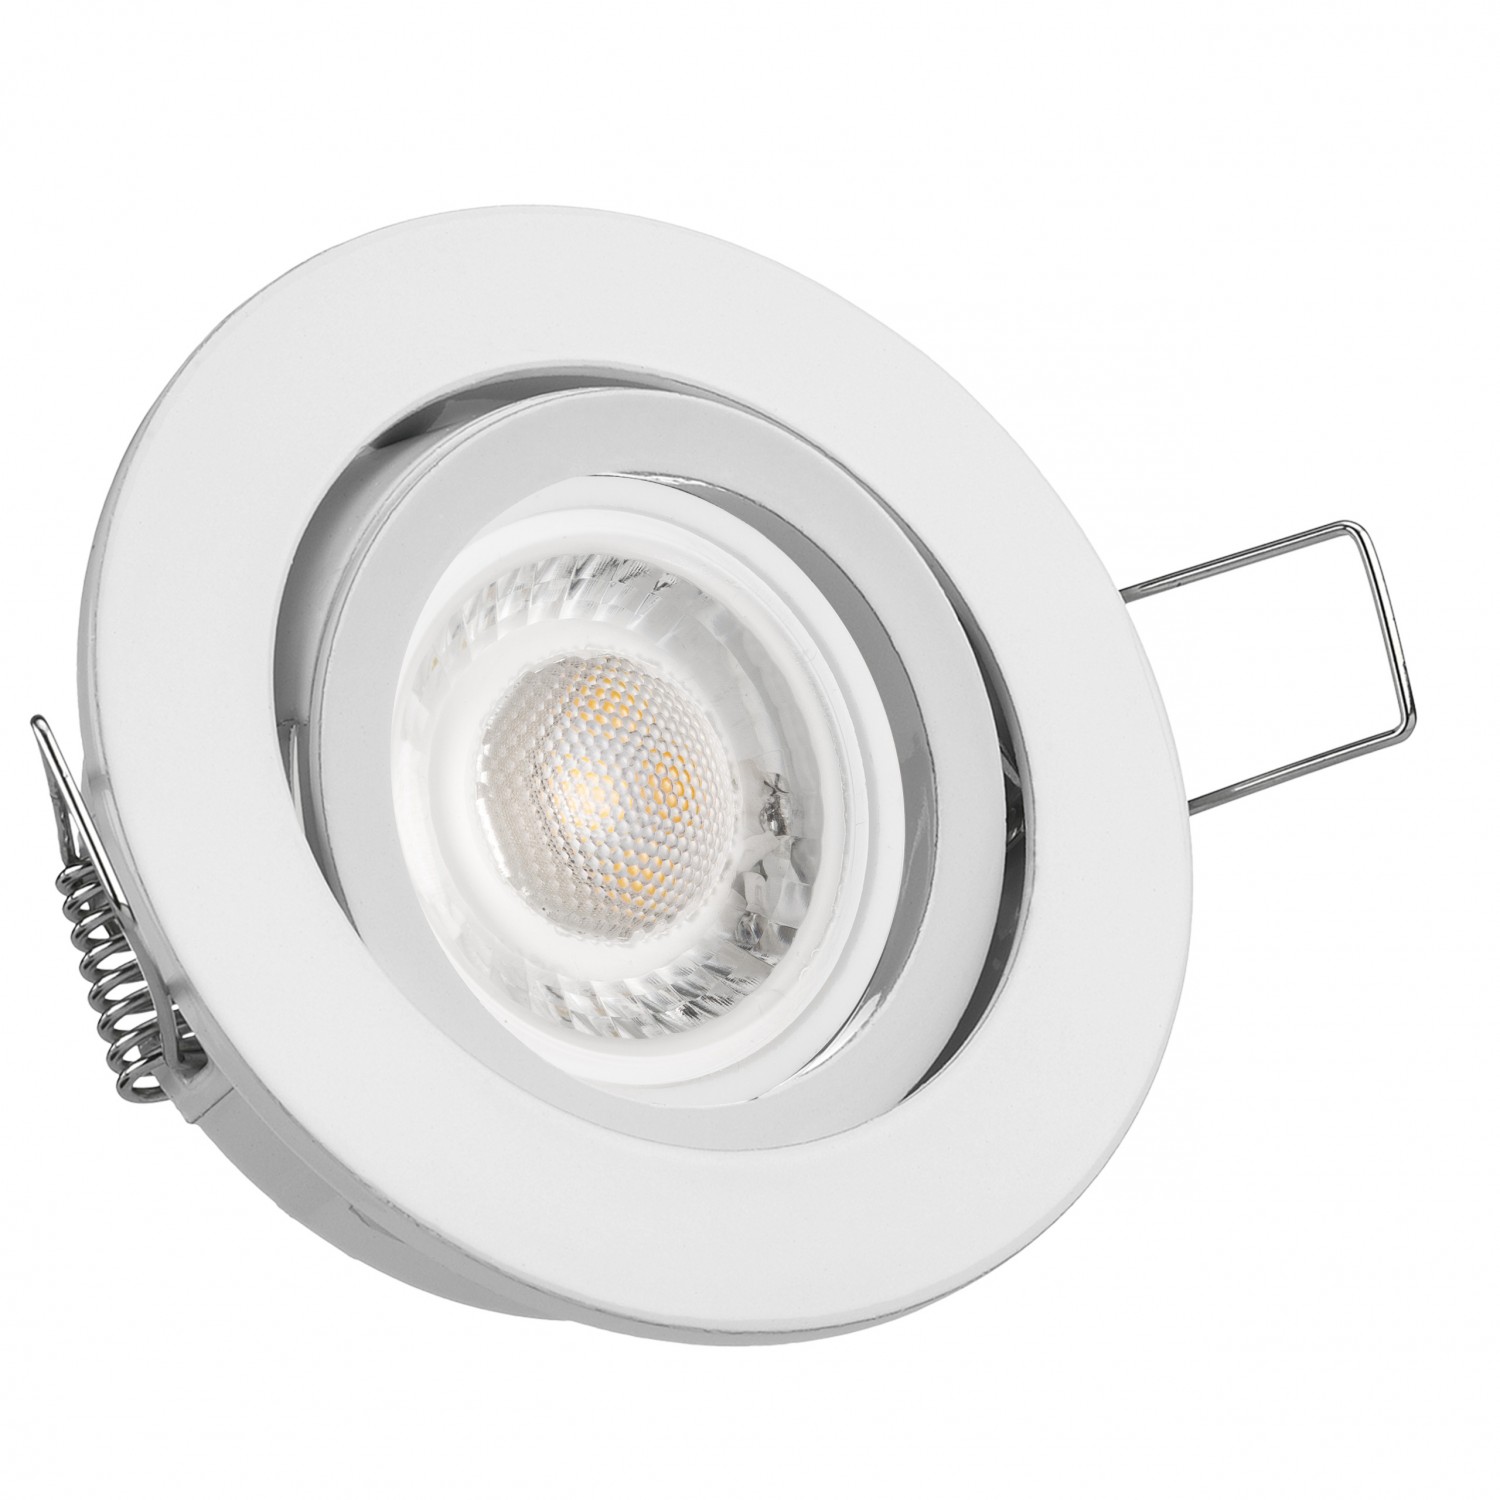 LED Einbaustrahler Set extra flach in weiß mit 5W Leuchtmittel von LEDANDO  - 4000K neutralweiß - 60° Abstrahlwinkel - 50W Ersatz - rund | LEDANDO  Onlineshop